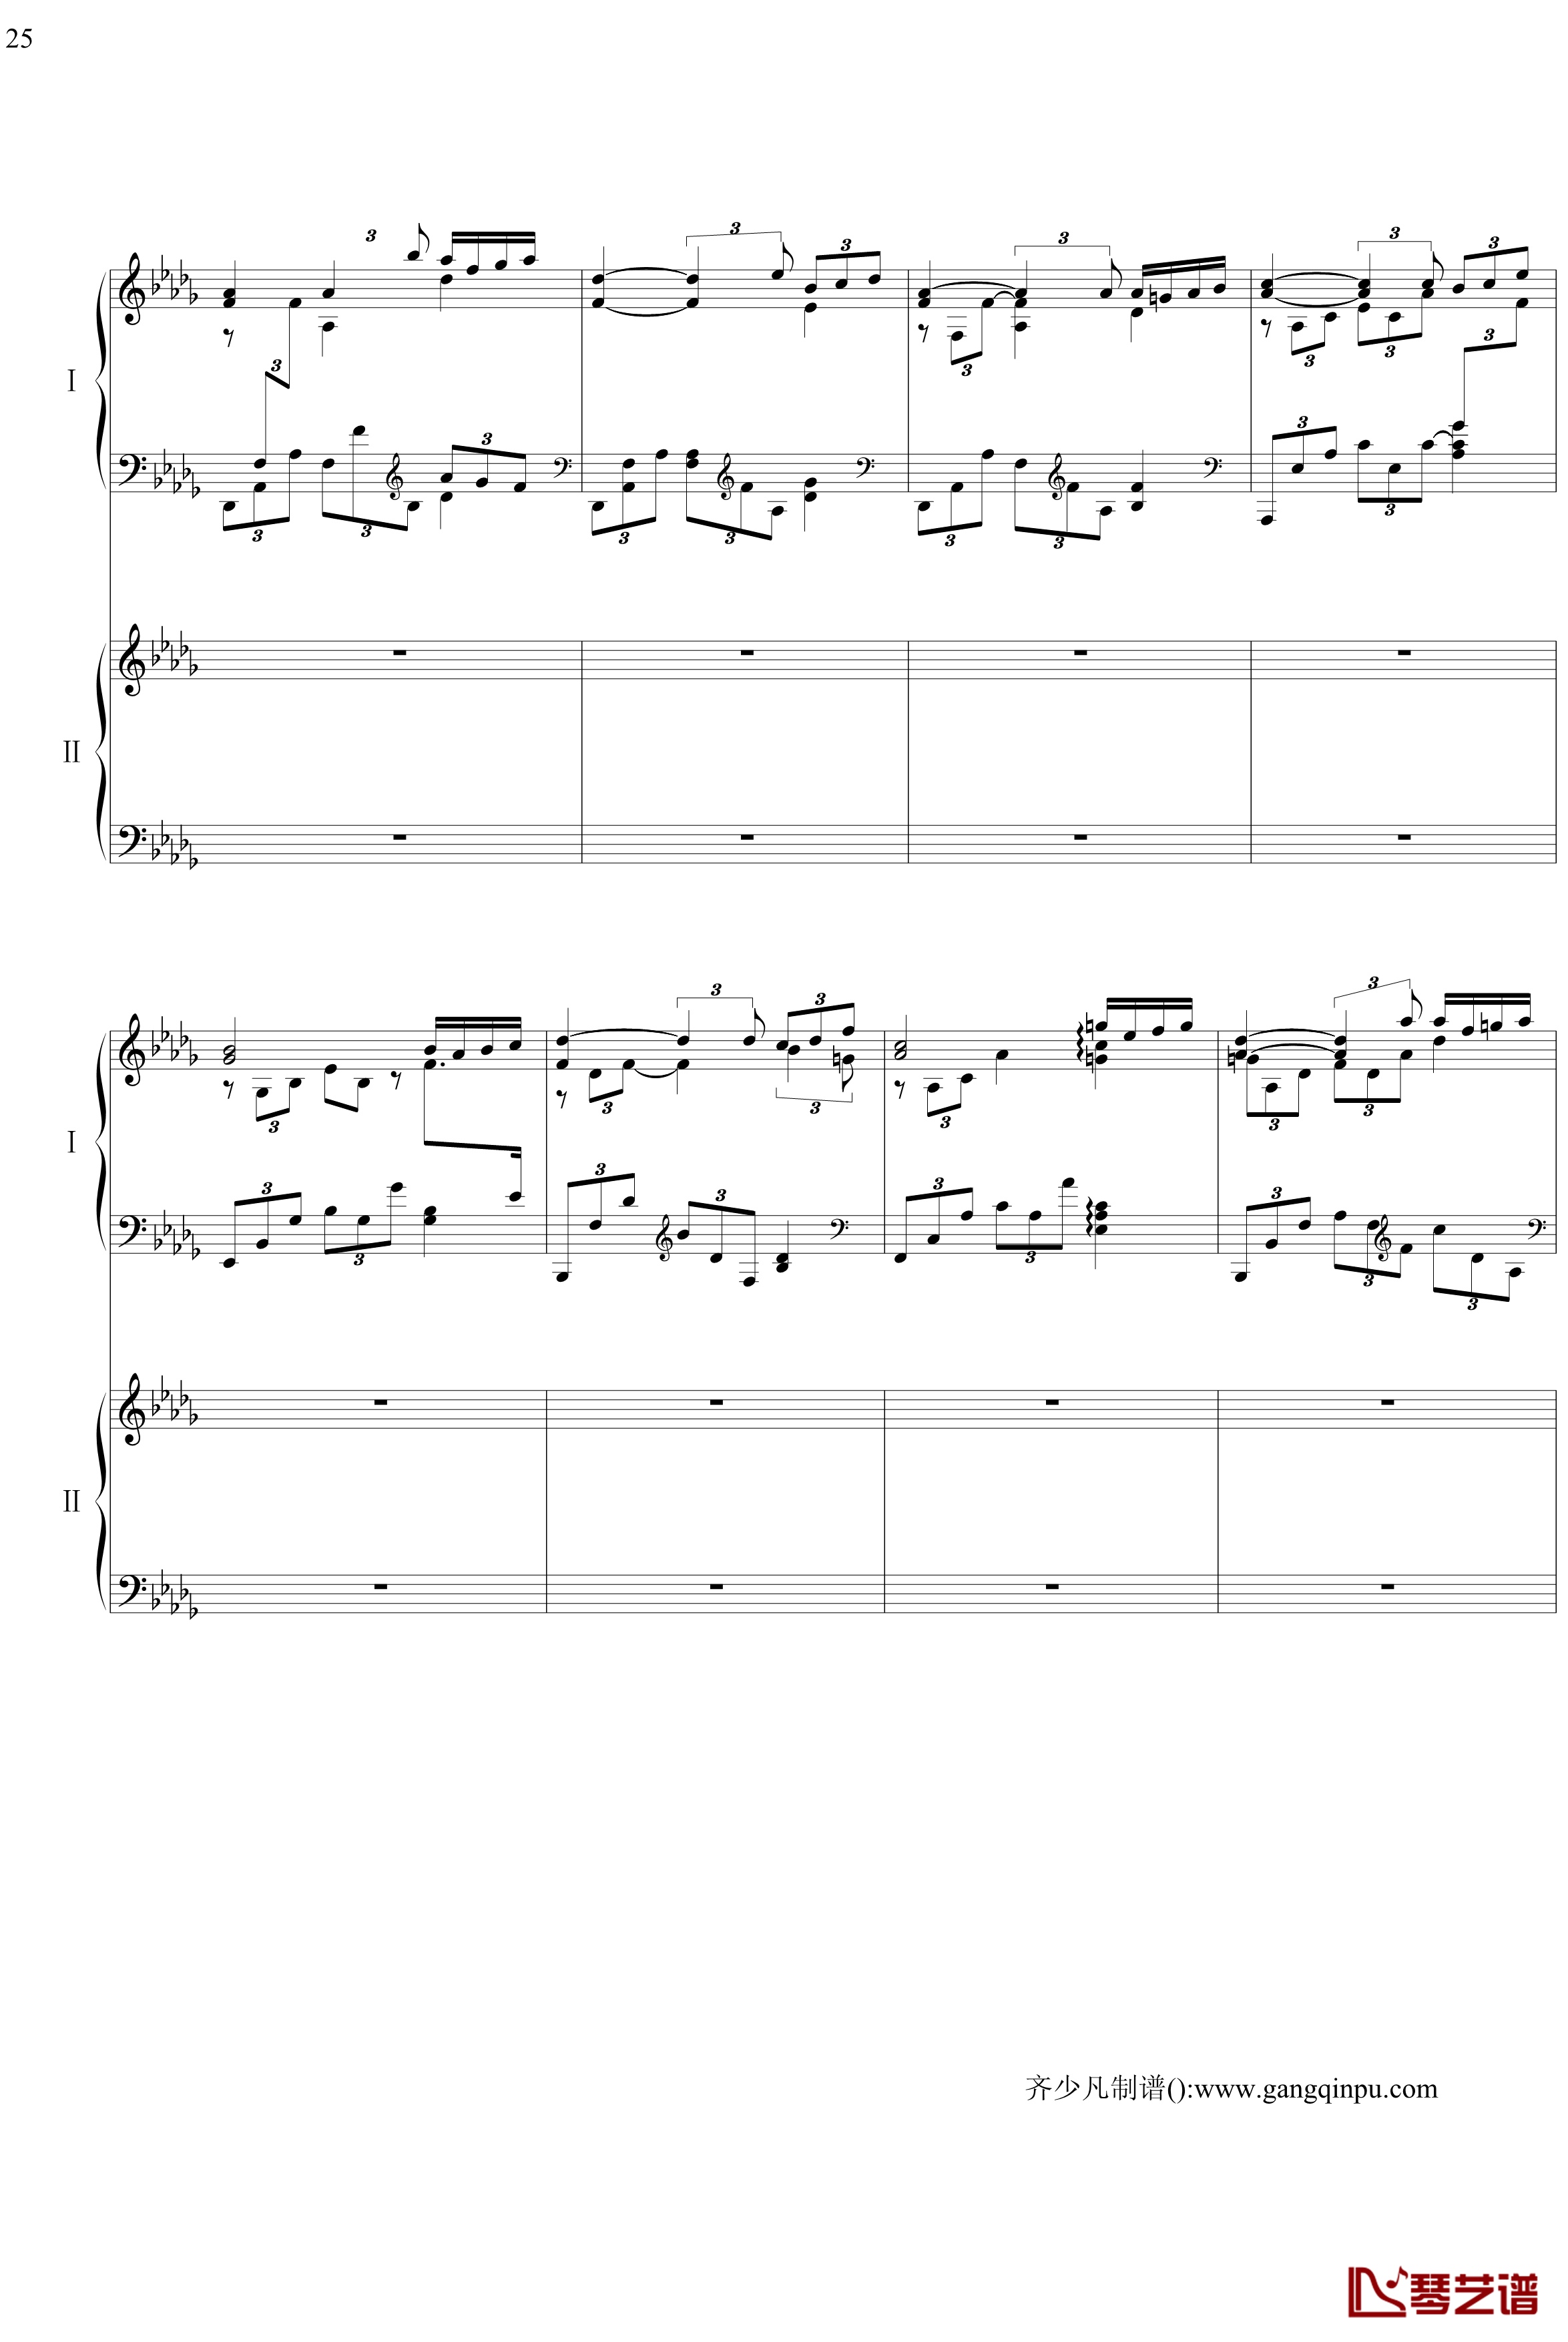 帕格尼尼主题狂想曲钢琴谱-11~18变奏-拉赫马尼若夫25